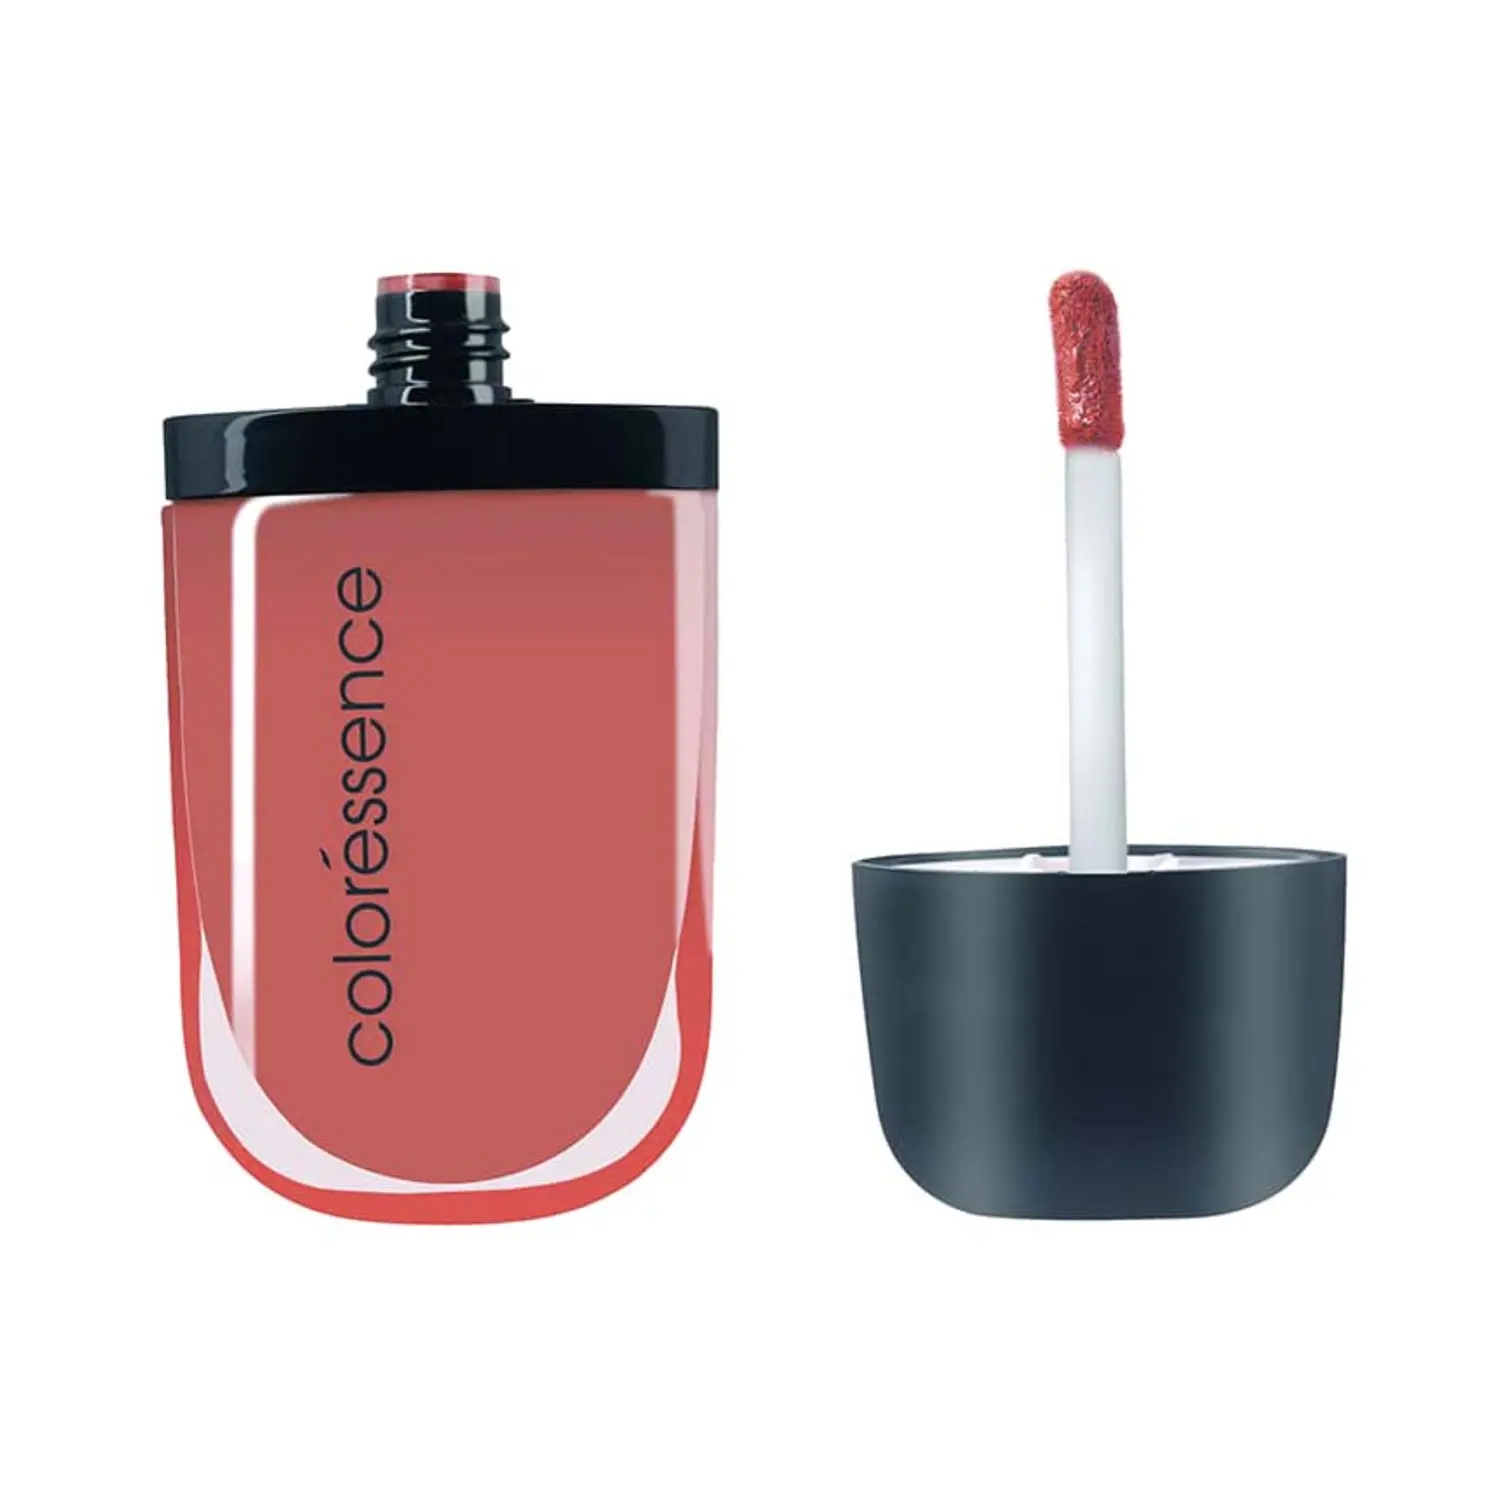 Coloressence Intense Soft Matte Liquid Lip Color Lipstick - Truffle (8ml)